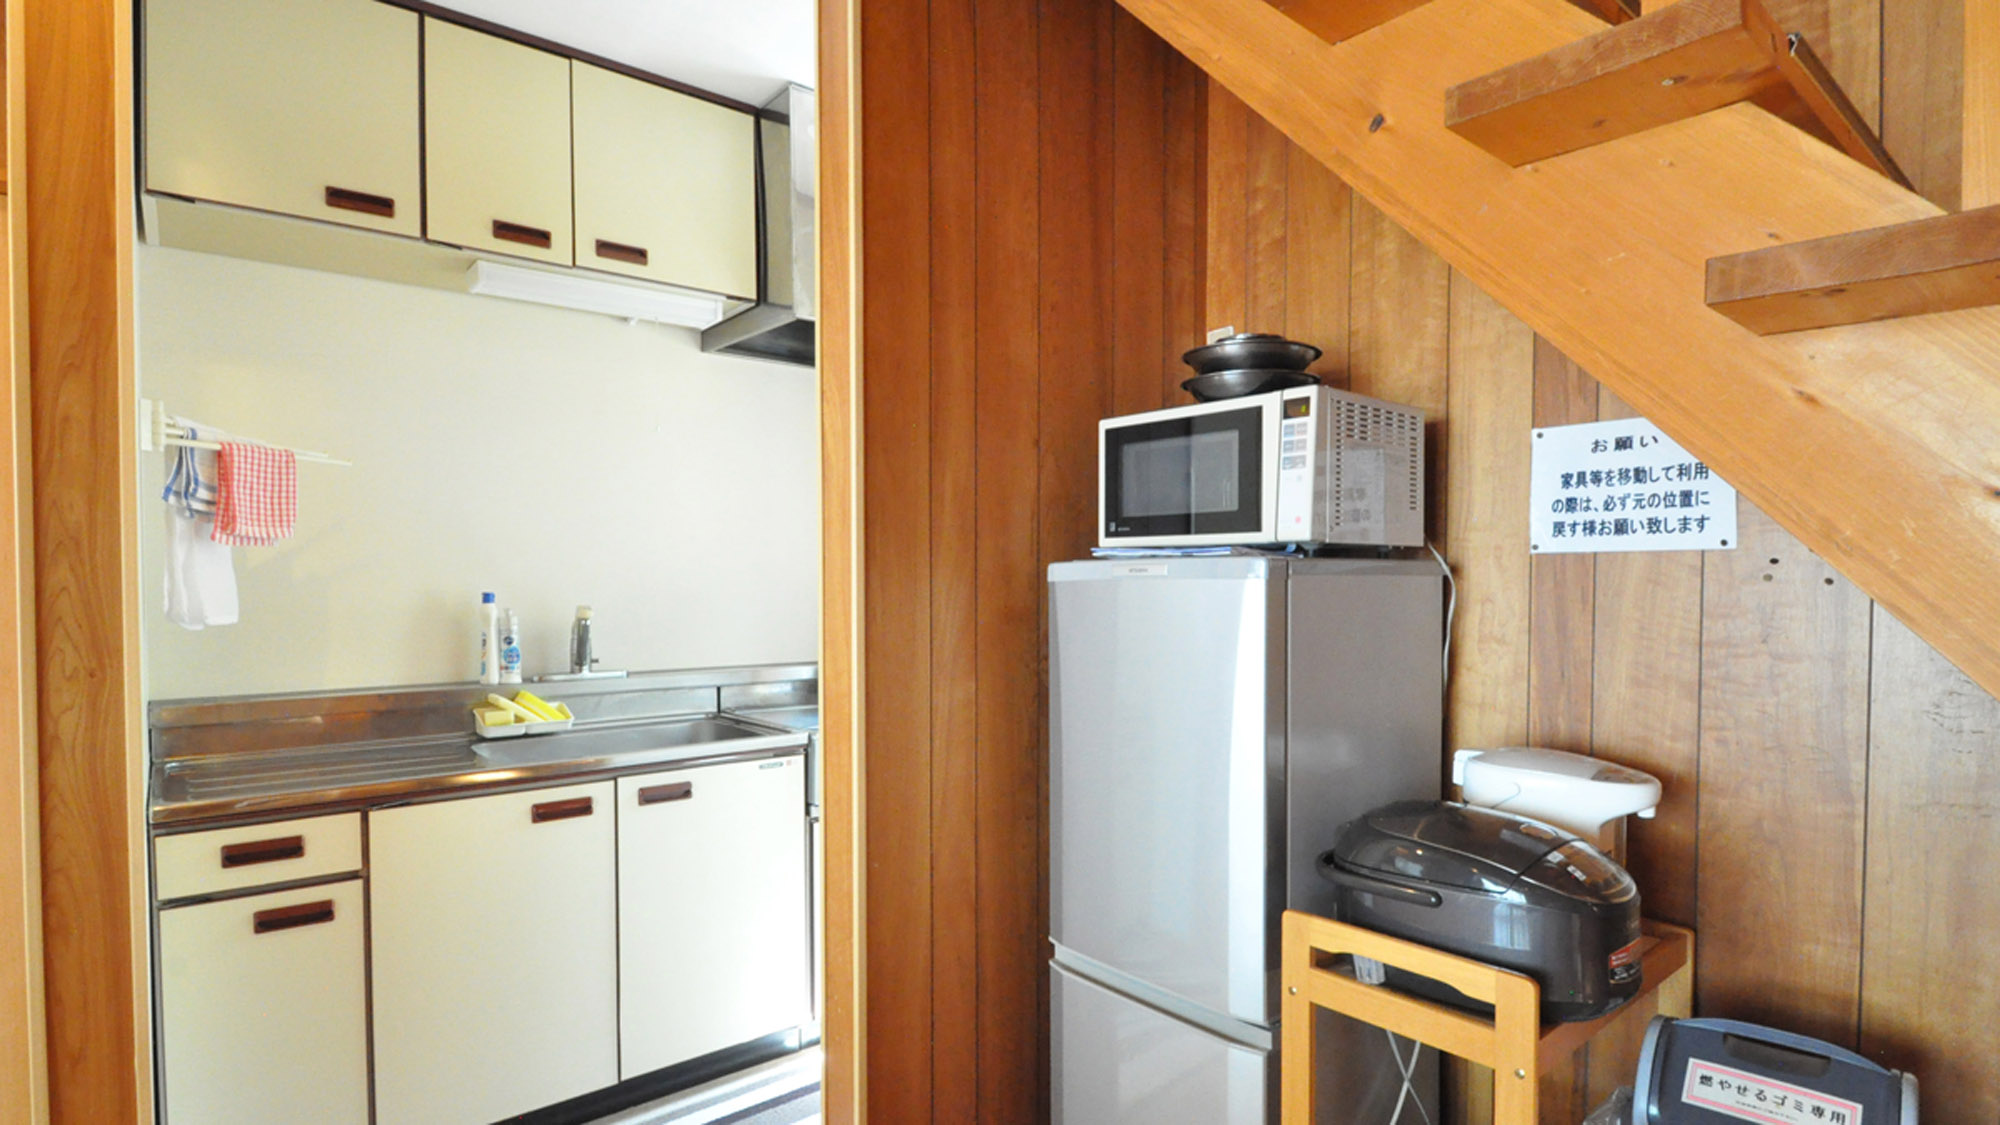 【備品】冷蔵庫・電子レンジ・電気炊飯器・クッキングヒーター・ポット完備